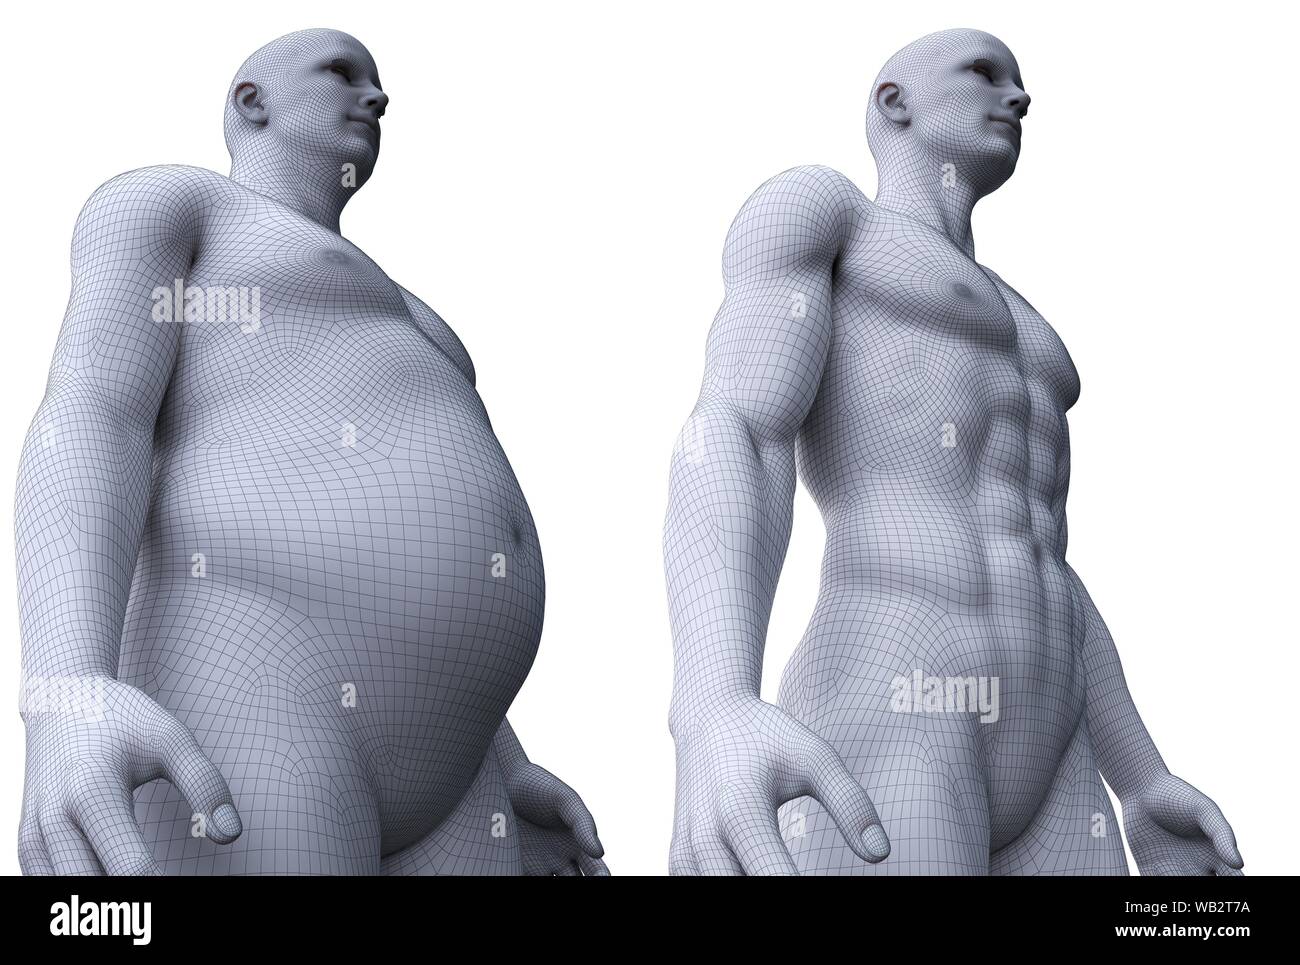 Comparaison de l'ajustement et un homme obèse, illustration de l'ordinateur. Banque D'Images